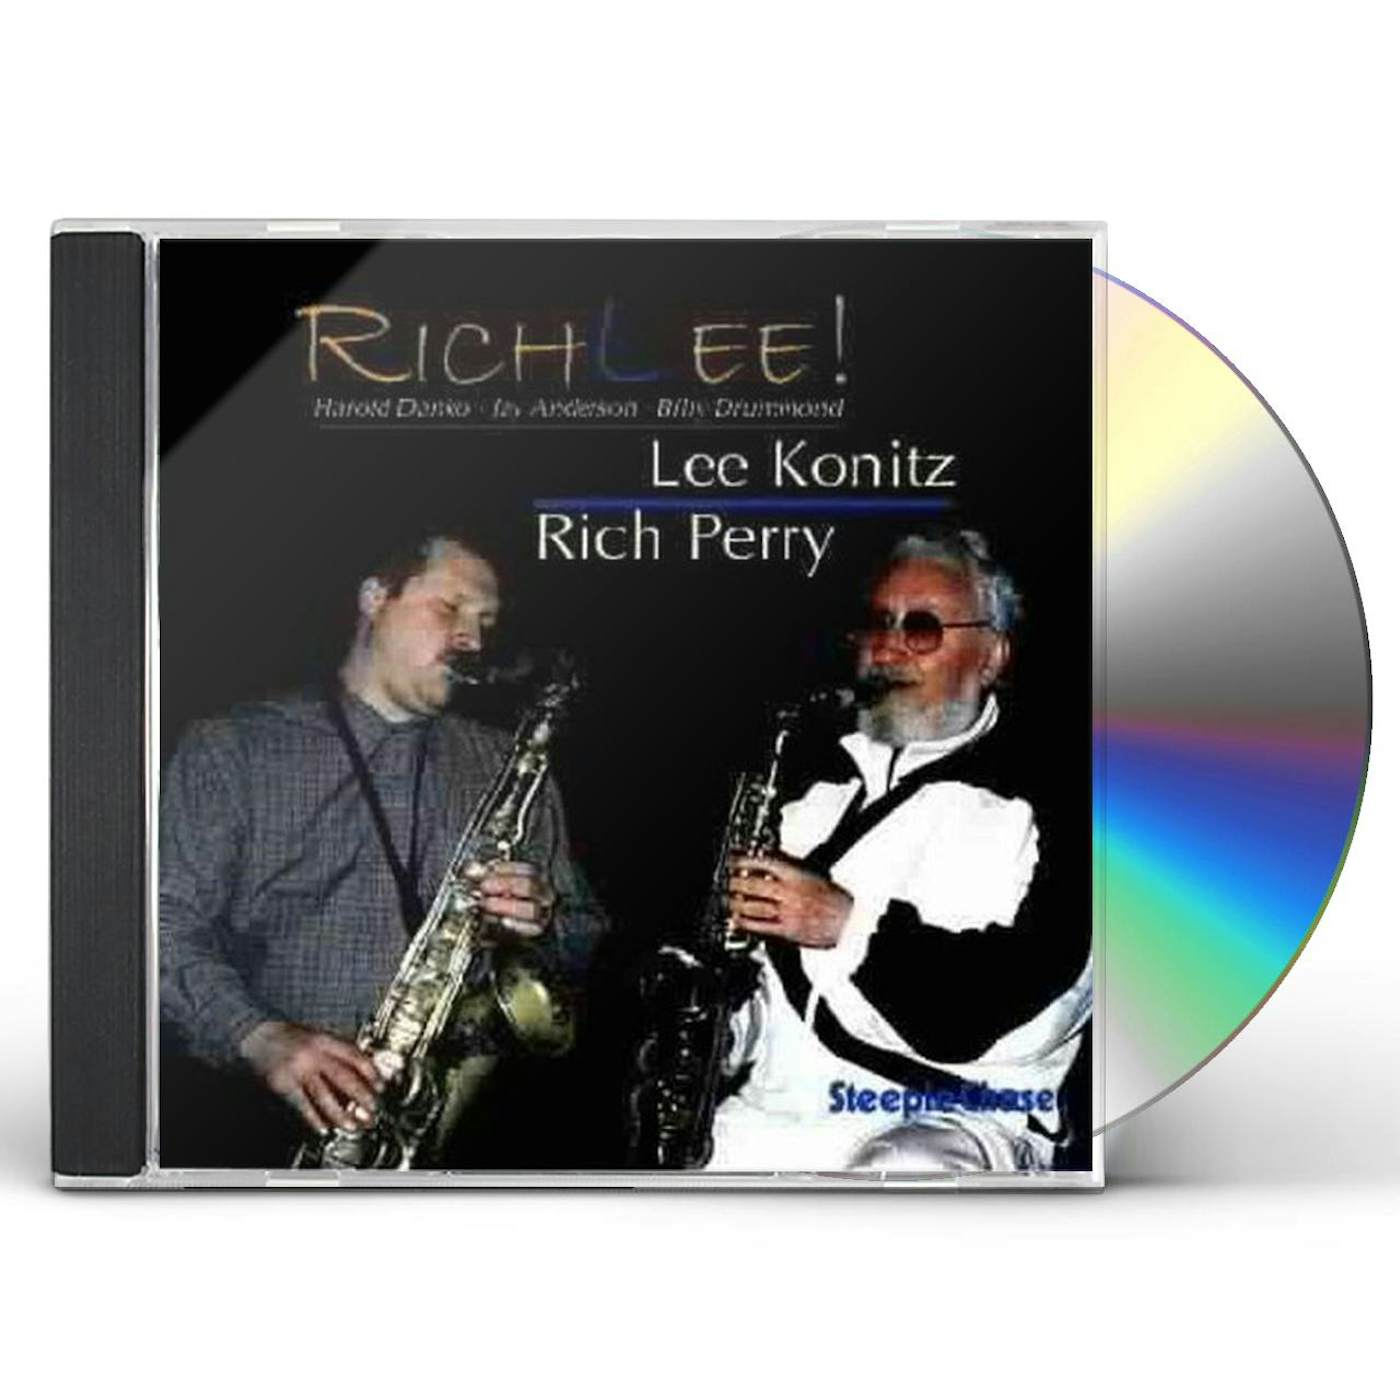 Lee Konitz RICHLEE CD